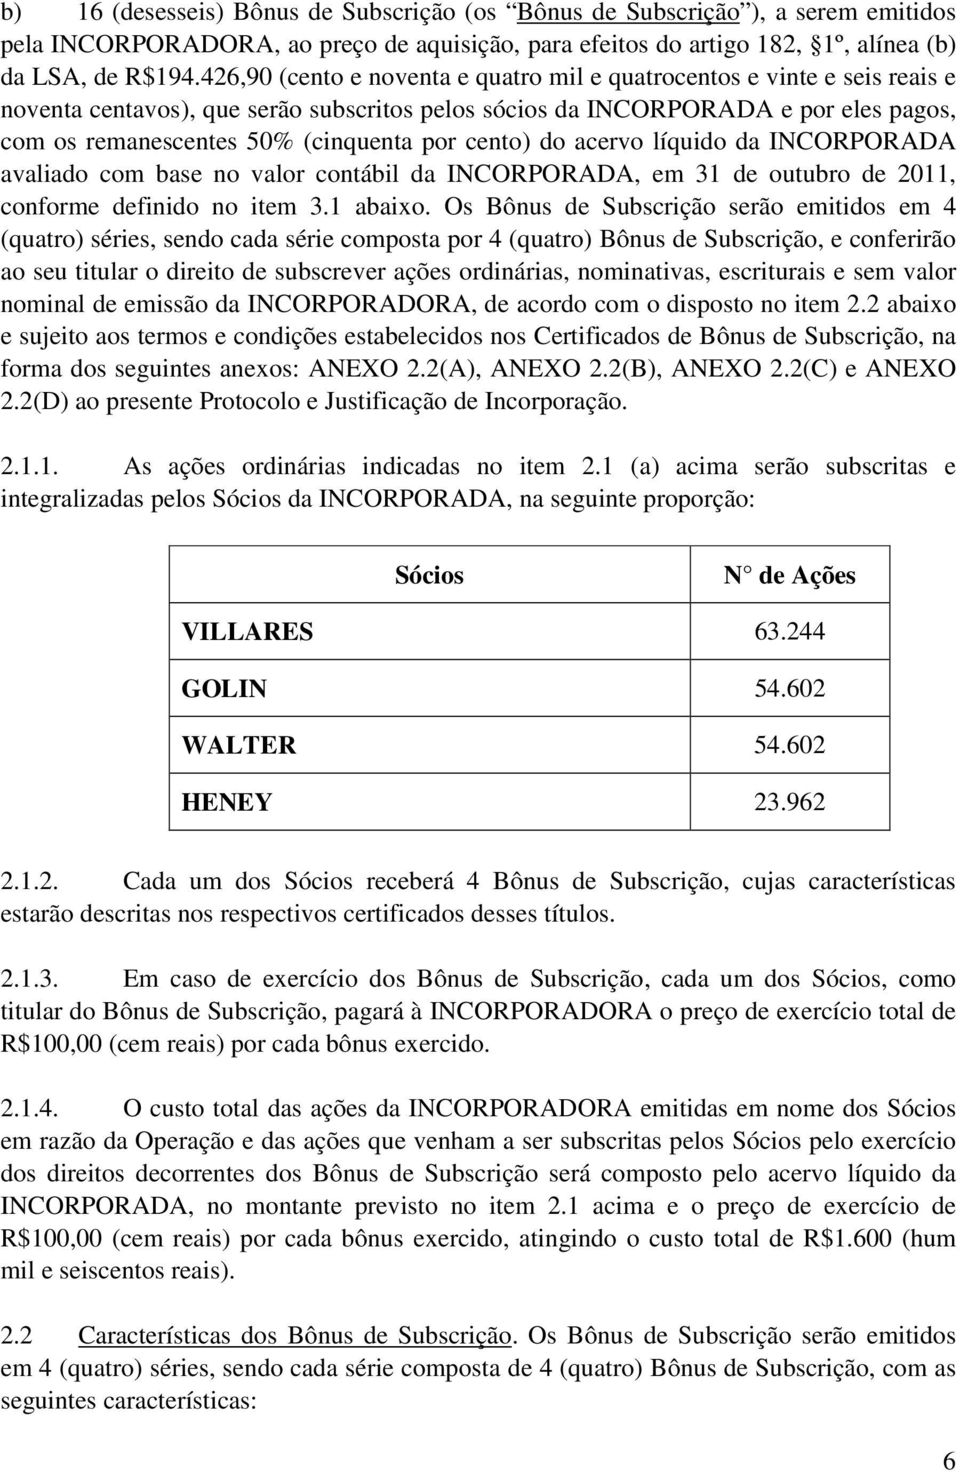 por cento) do acervo líquido da INCORPORADA avaliado com base no valor contábil da INCORPORADA, em 31 de outubro de 2011, conforme definido no item 3.1 abaixo.